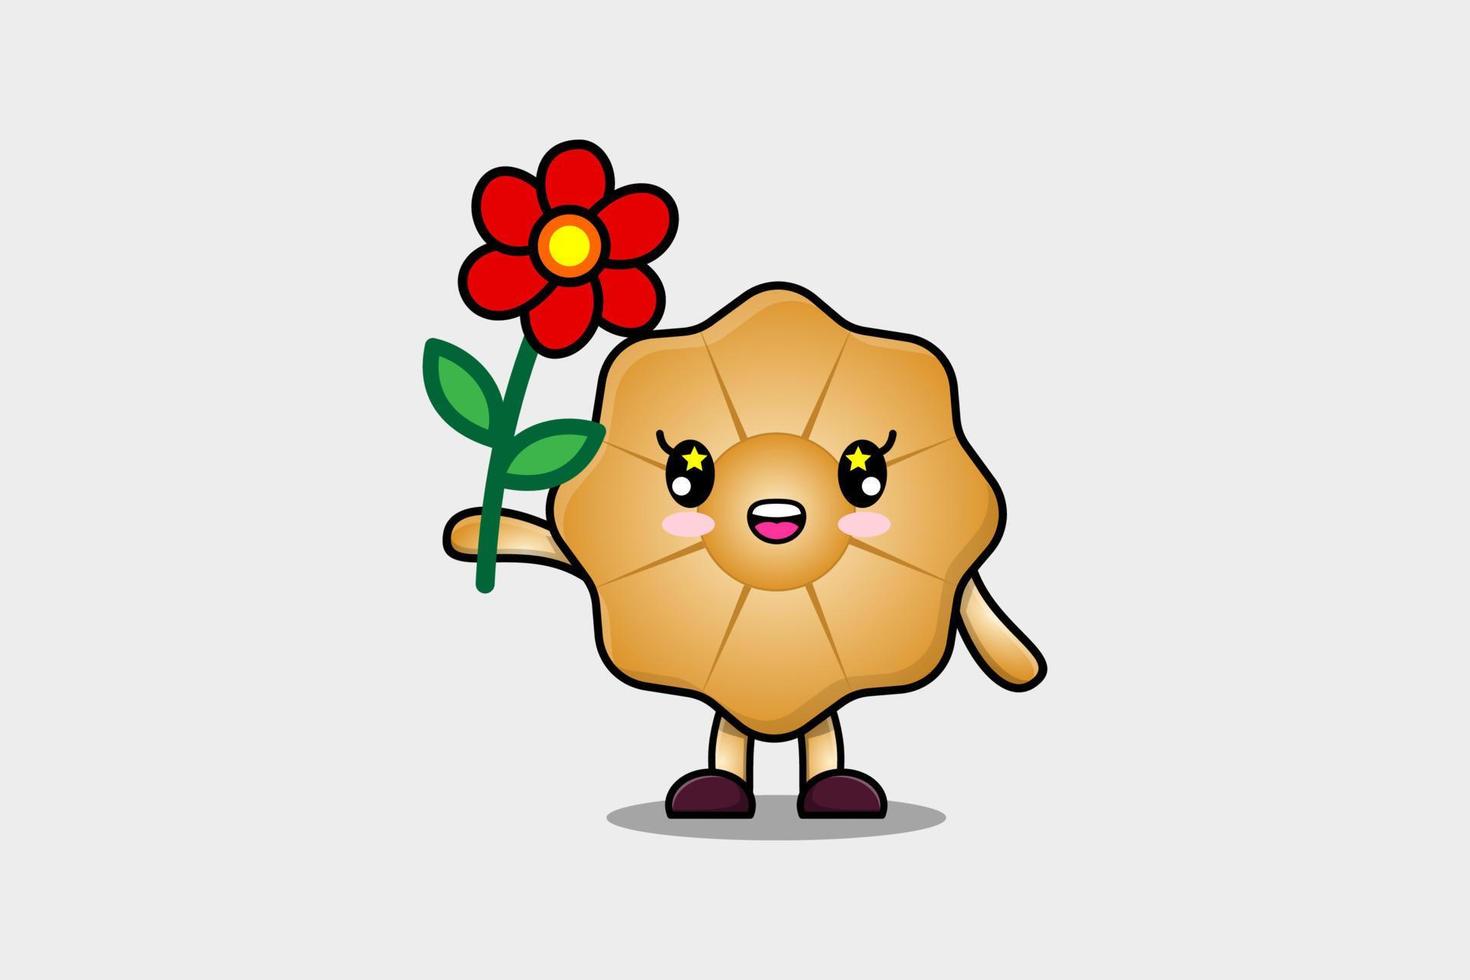 personnage de dessin animé mignon biscuits tenant une fleur rouge vecteur